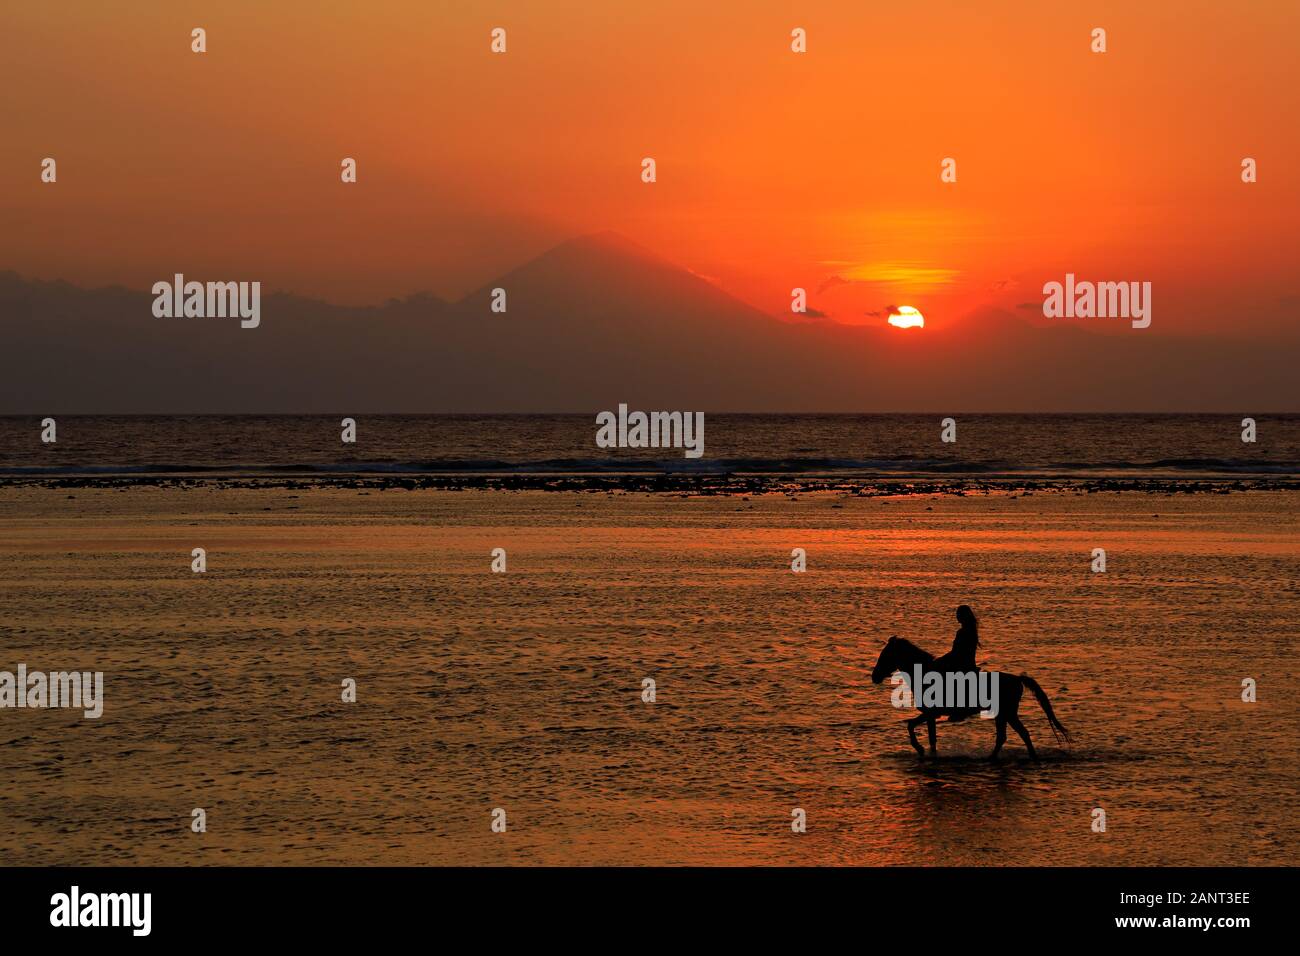 Silhouette d'un cheval et cavalier dans l'eau peu profonde sur une plage au coucher du soleil Banque D'Images